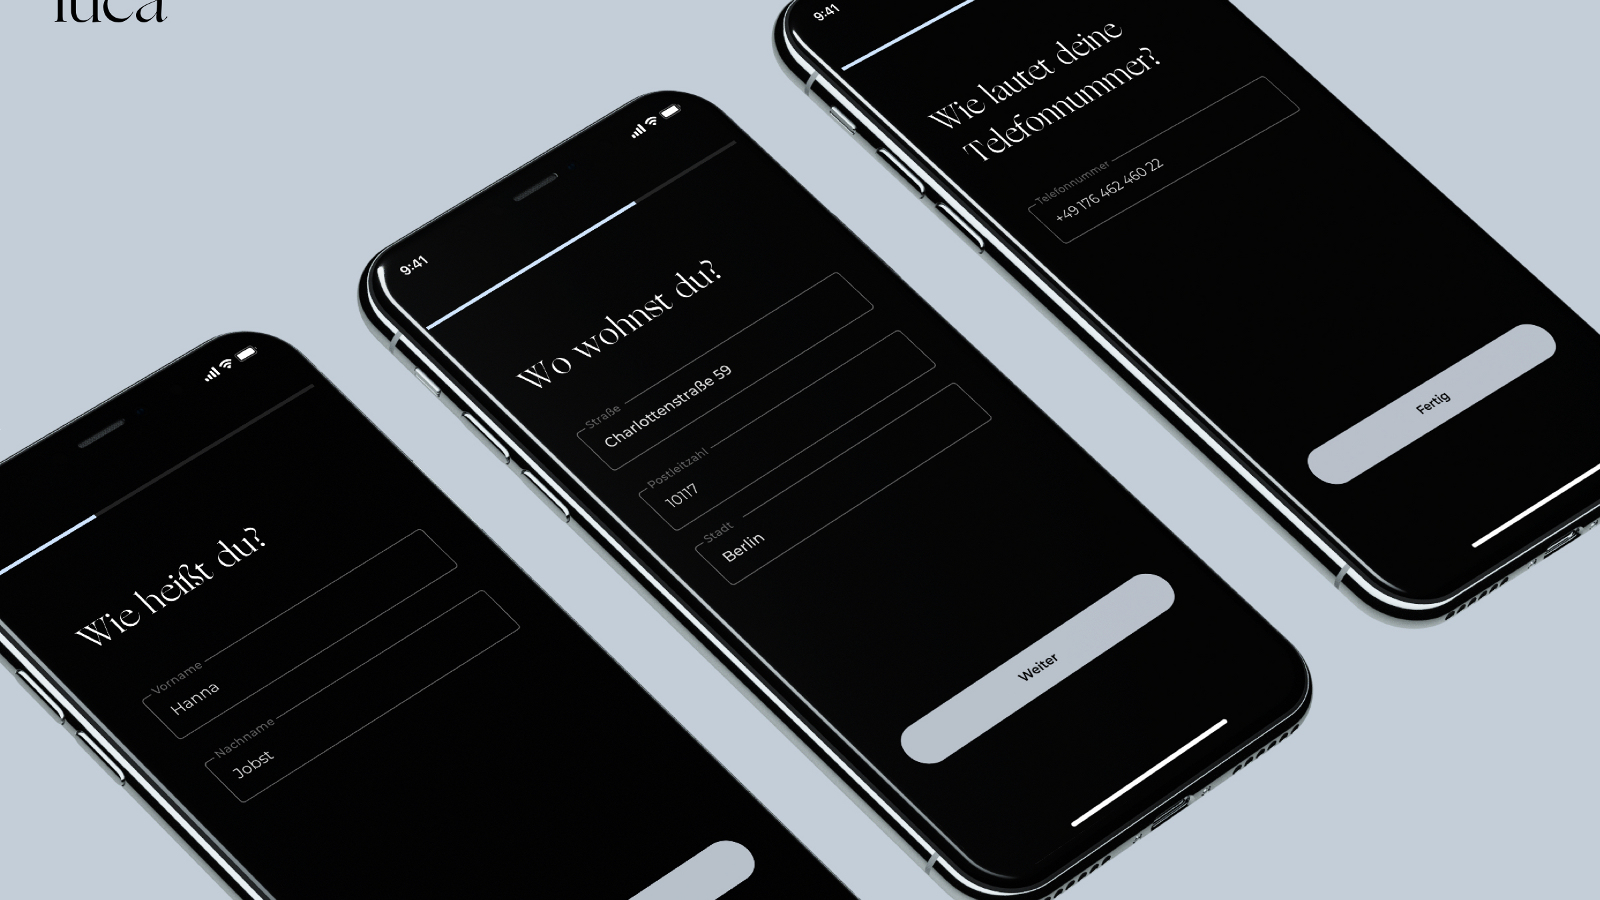 Luca-App auf drei Smartphones